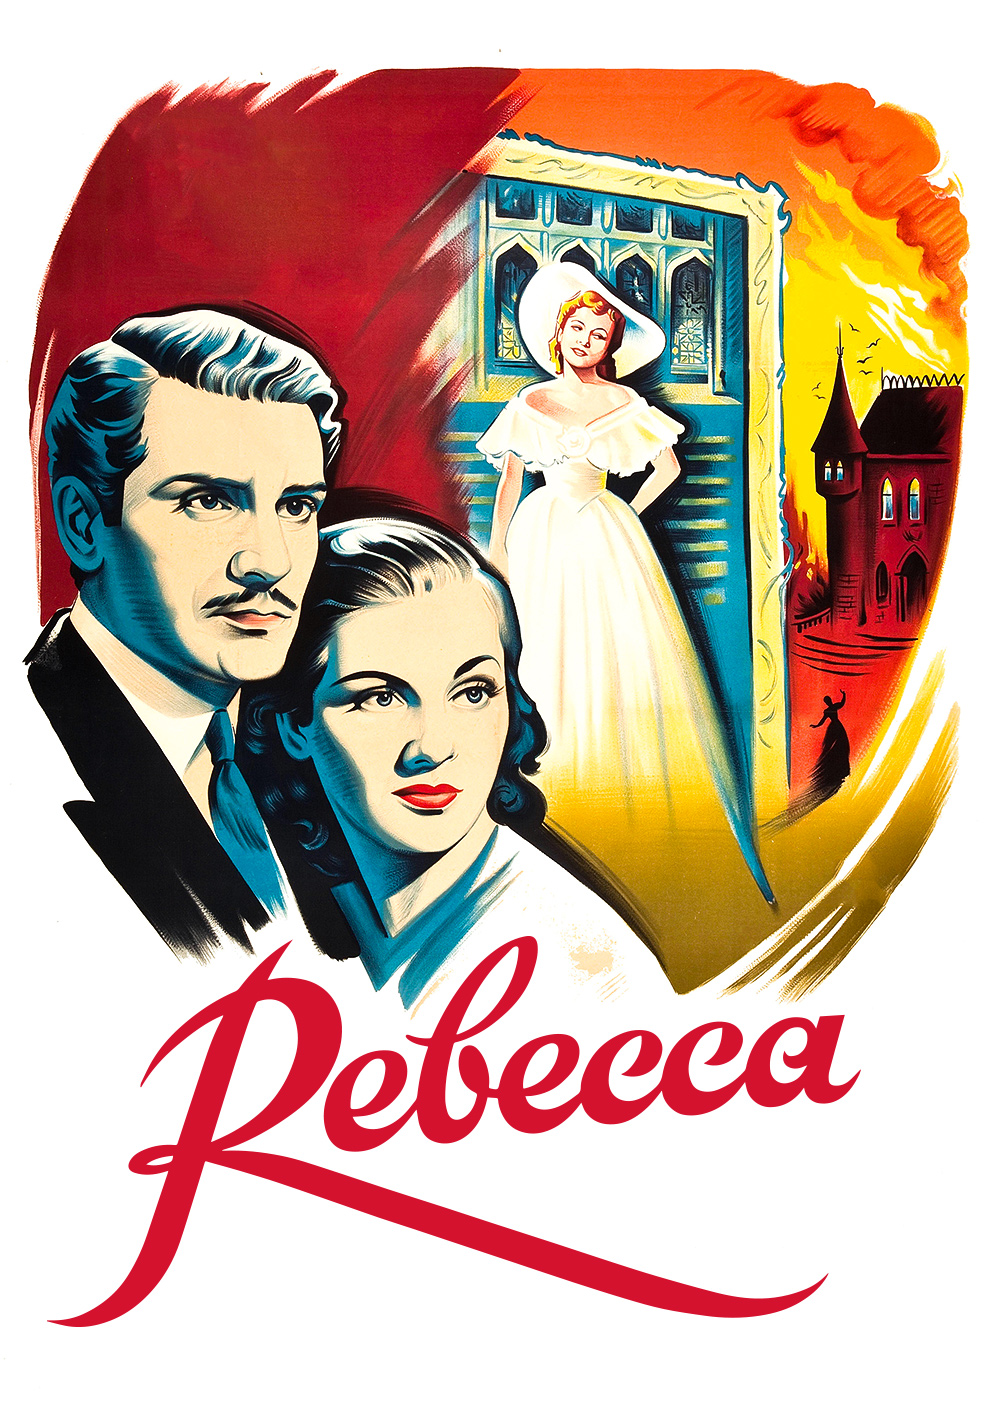 Rebecca (1940) Picture